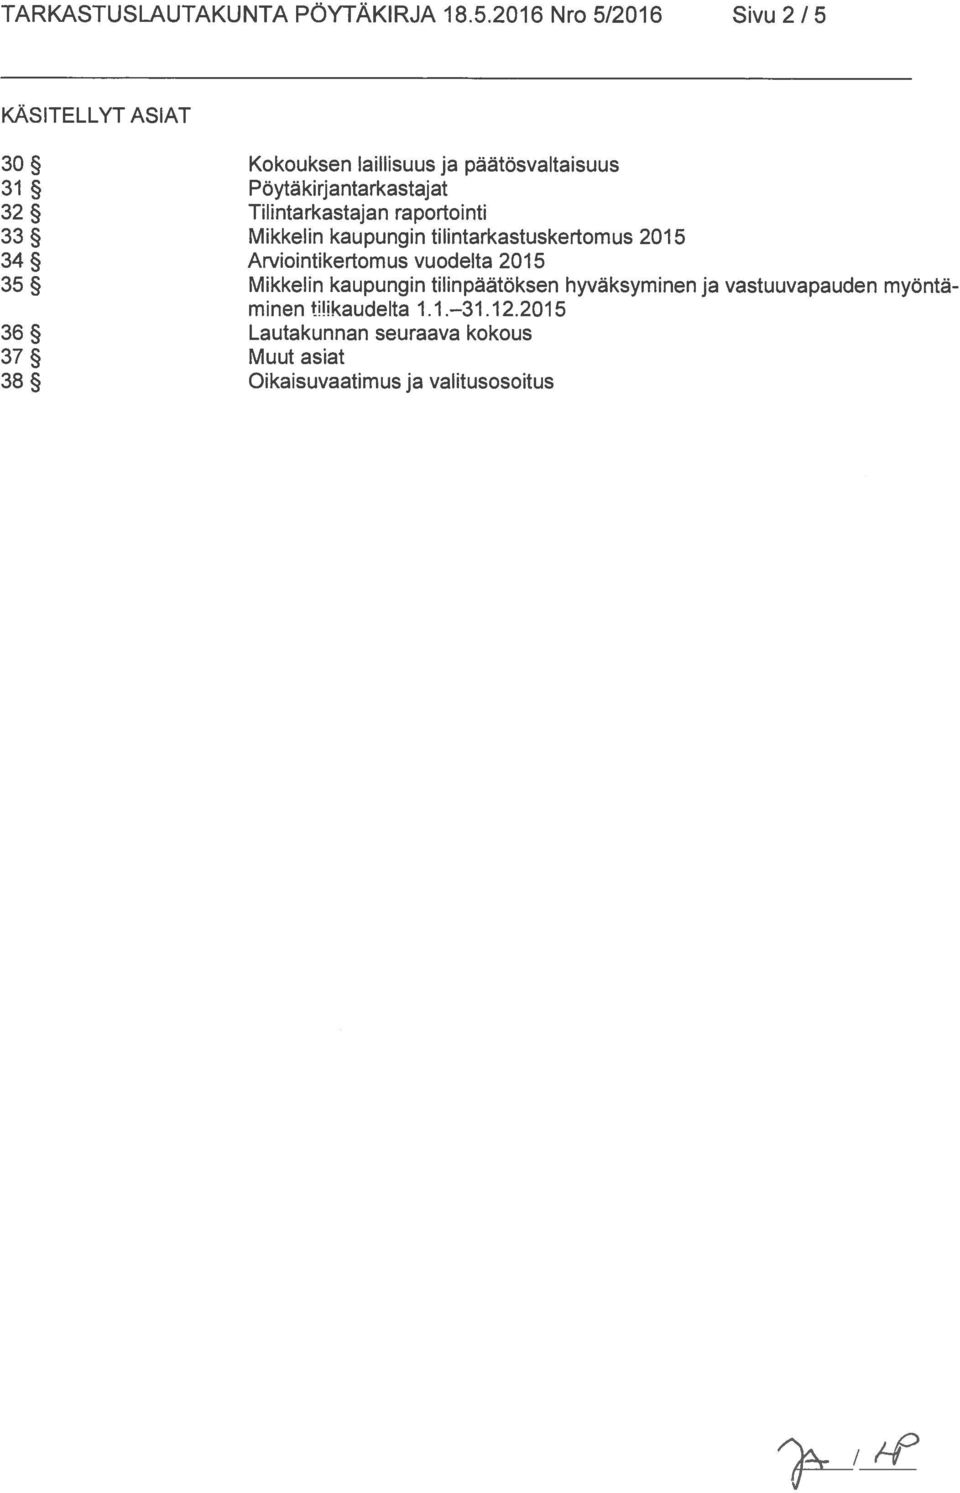 32 Tilintarkastajan raportointi 33 Mikkelin kaupungin tilintarkastuskertomus 2015 34 Arviointikertomus vuodelta